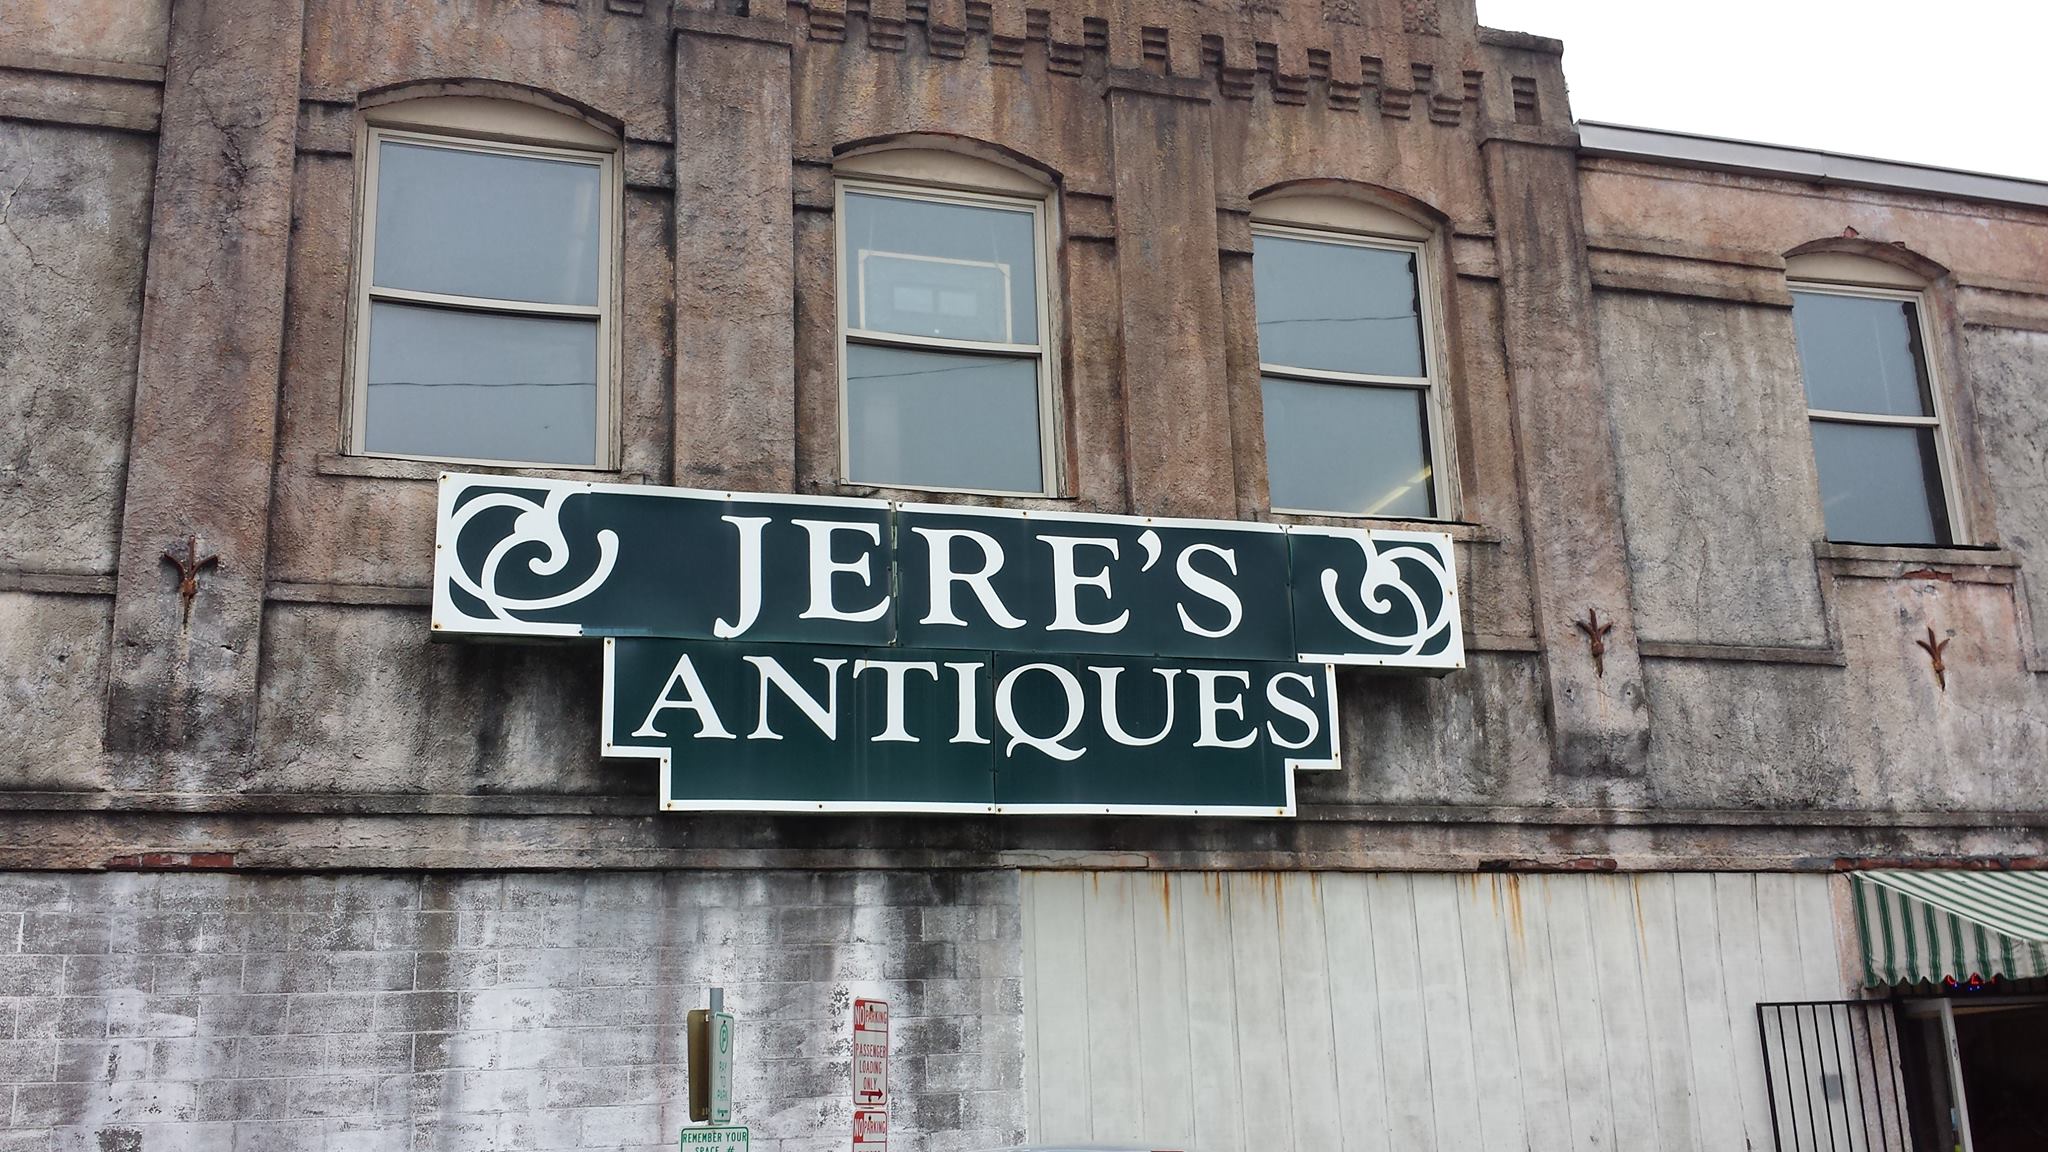 Jere’s Antiques